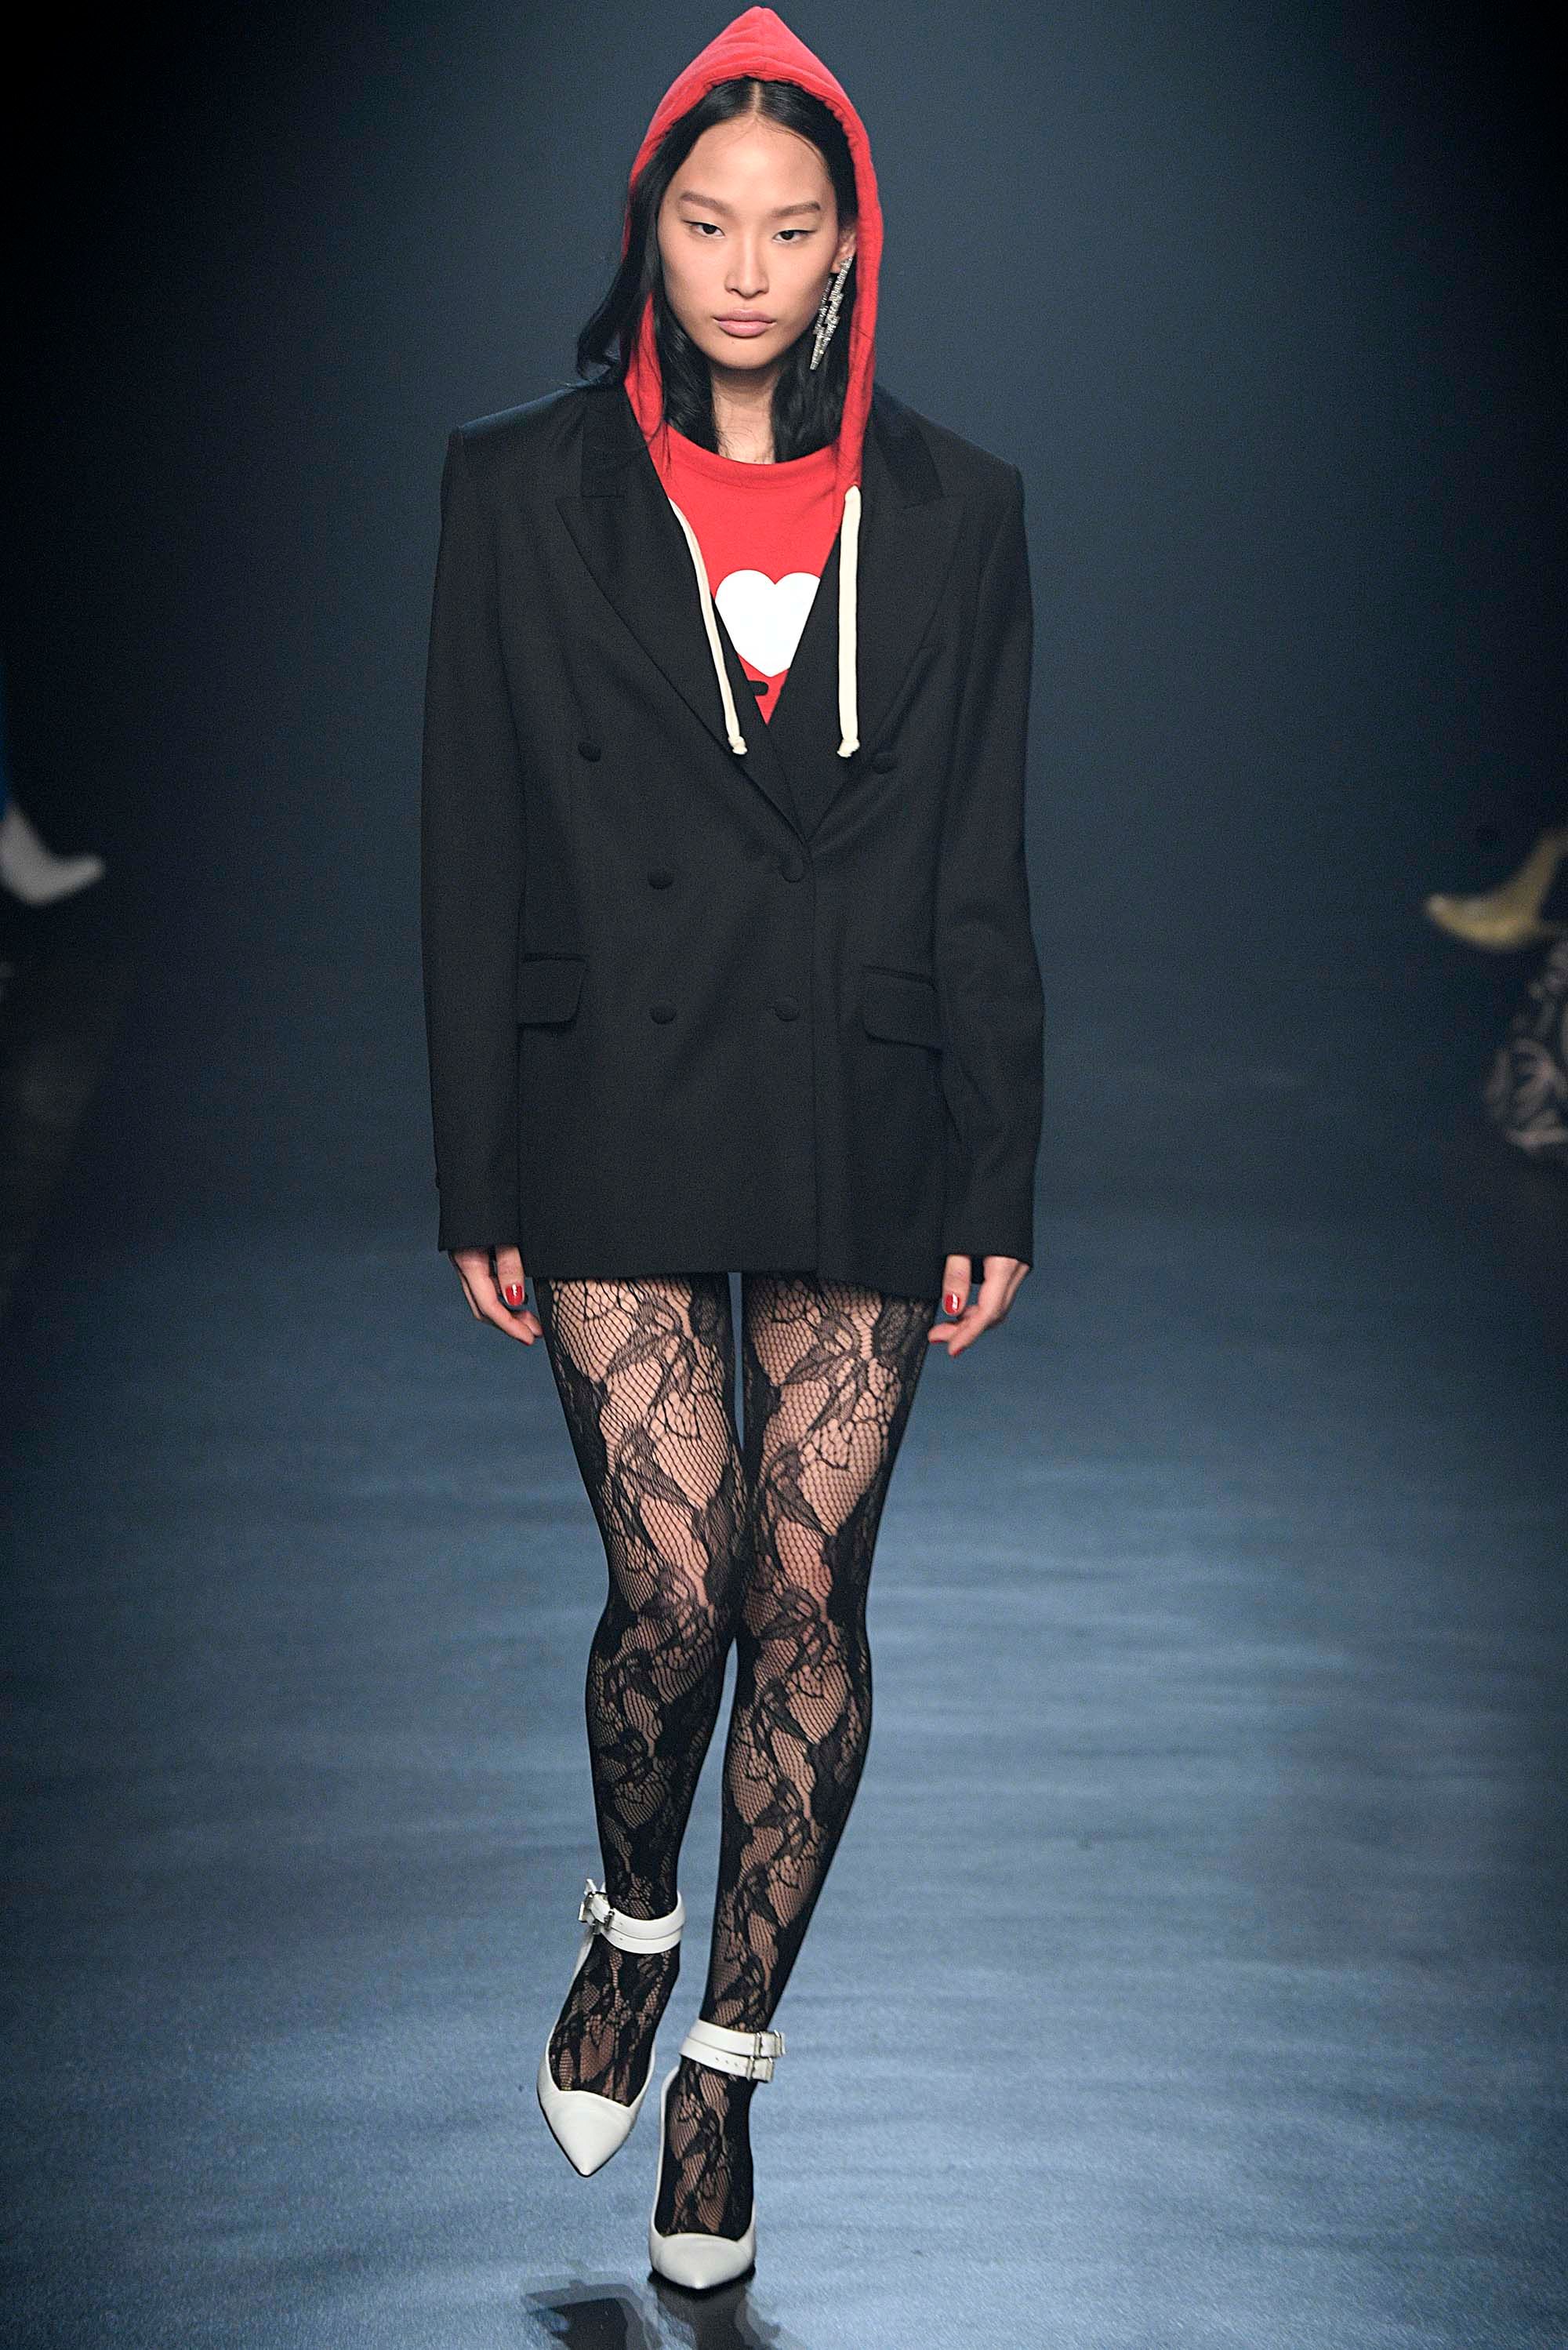 Chanel F/W 18 womenswear #8 - Tagwalk: The Fashion Search Engine